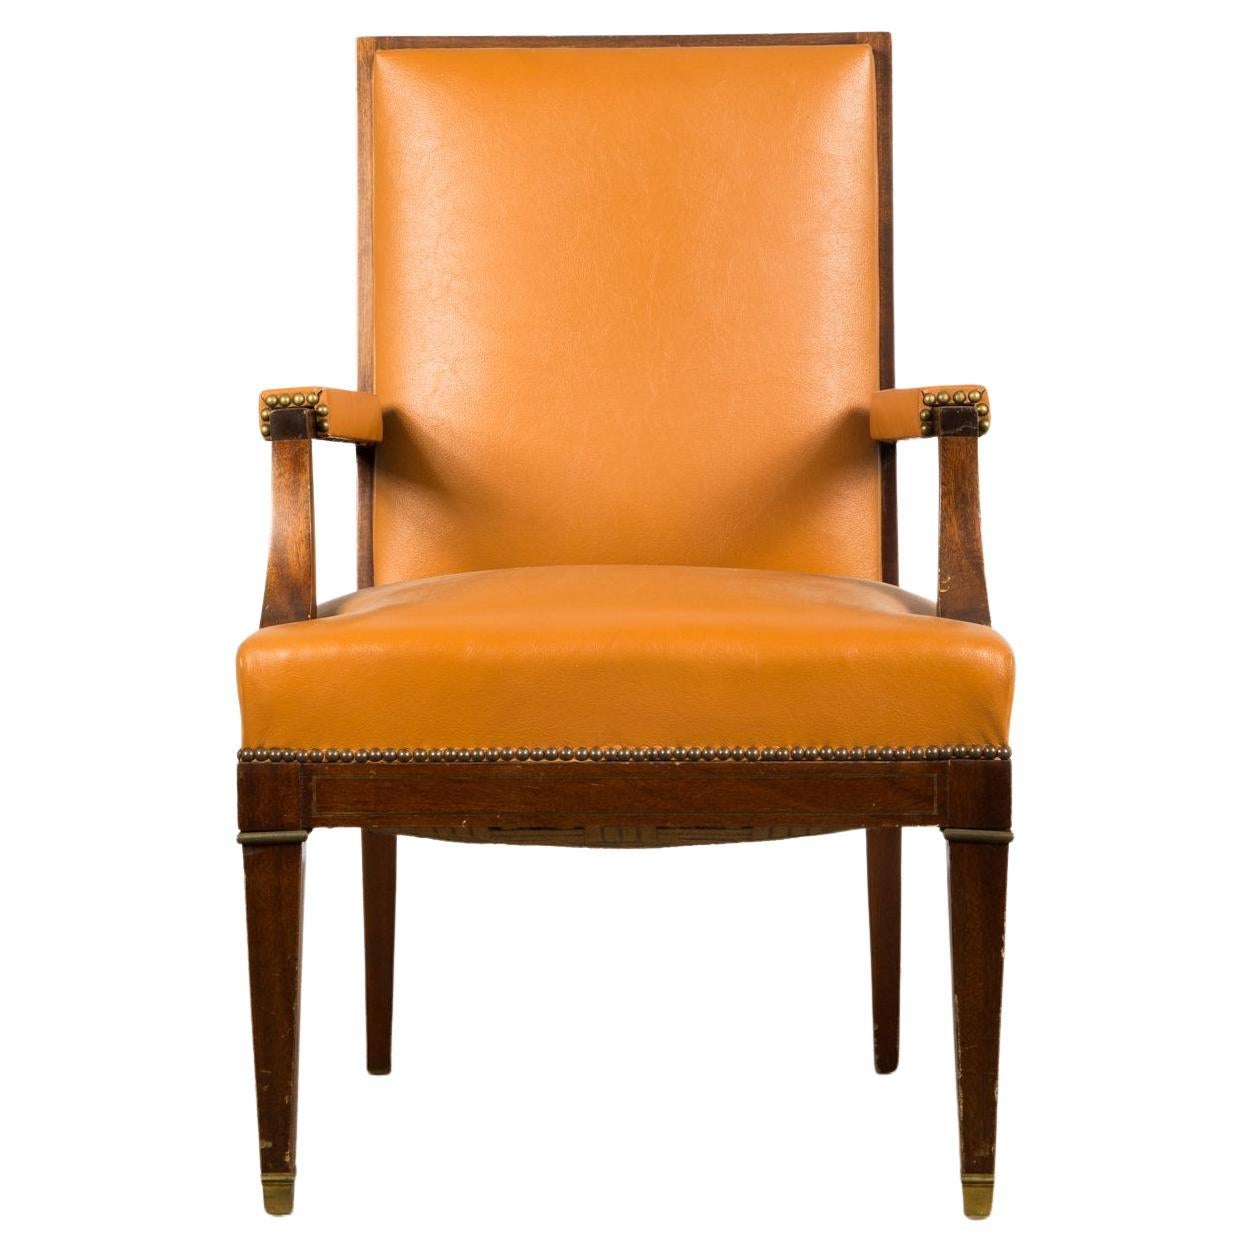 Grand fauteuil Art Déco  / chaise de directeur par De Coene Frères. Belgique années 1930.